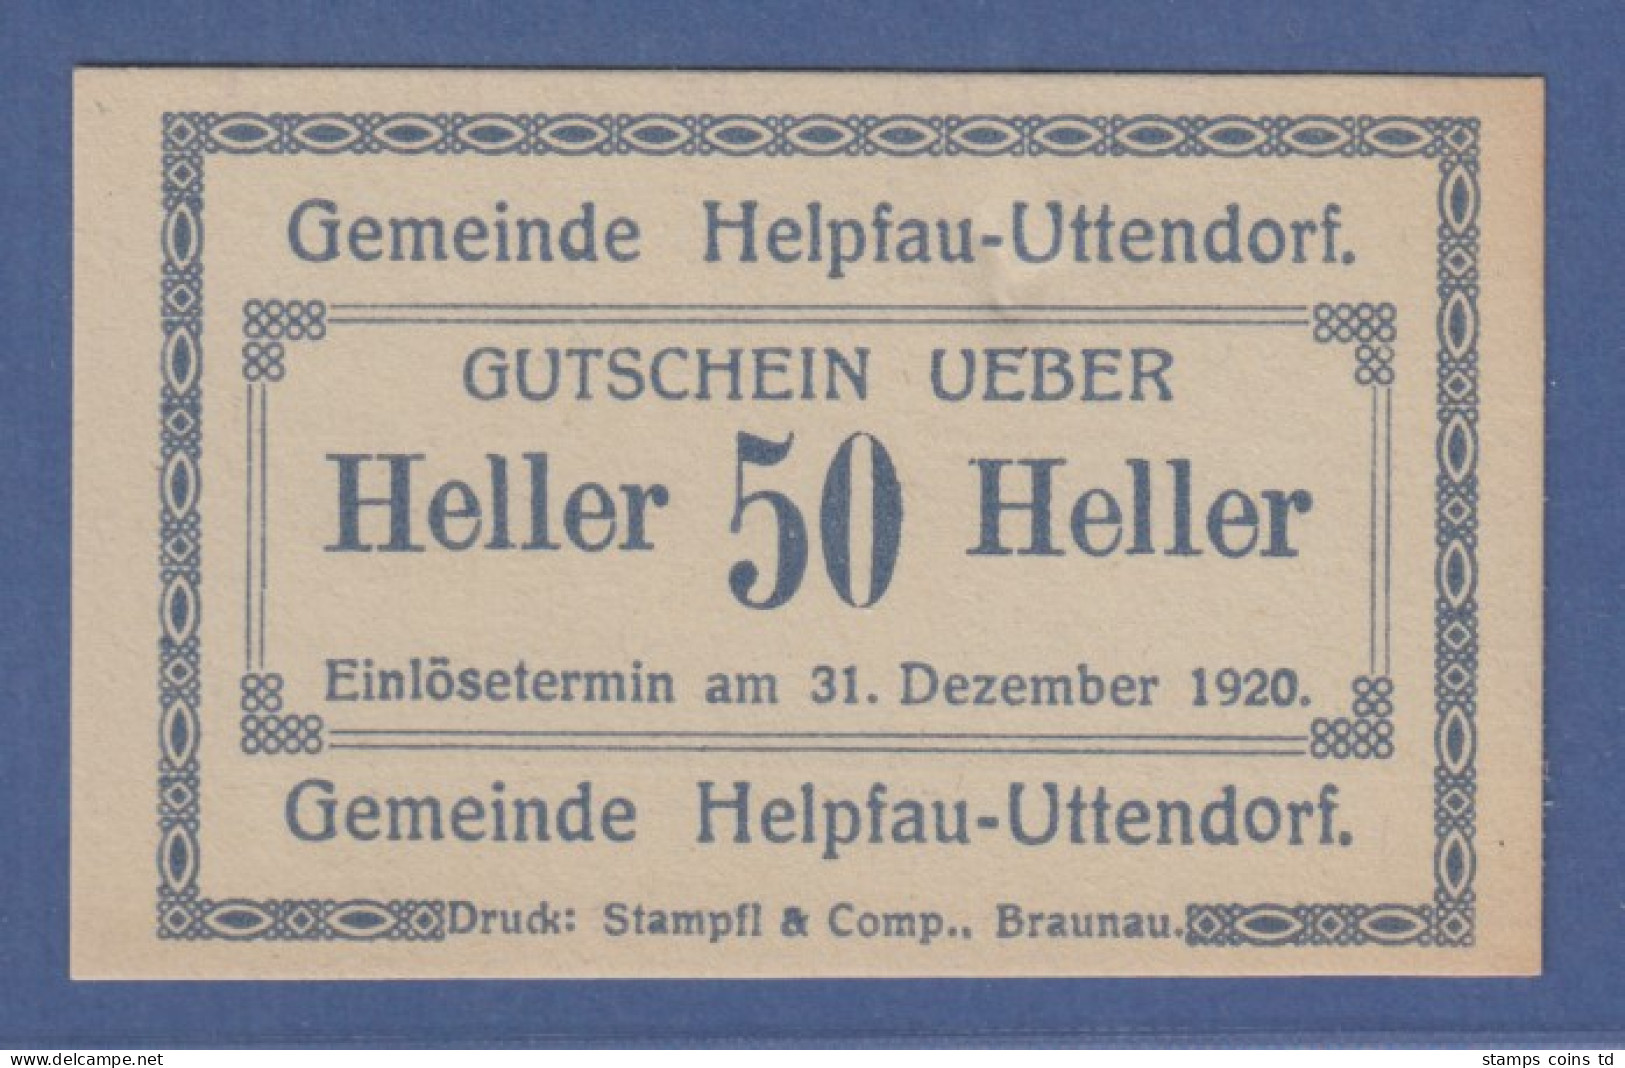 Banknote Österreich Gutschein über 50 Heller Gemeinde Helpfau-Uttendorf, 1920 - Oesterreich